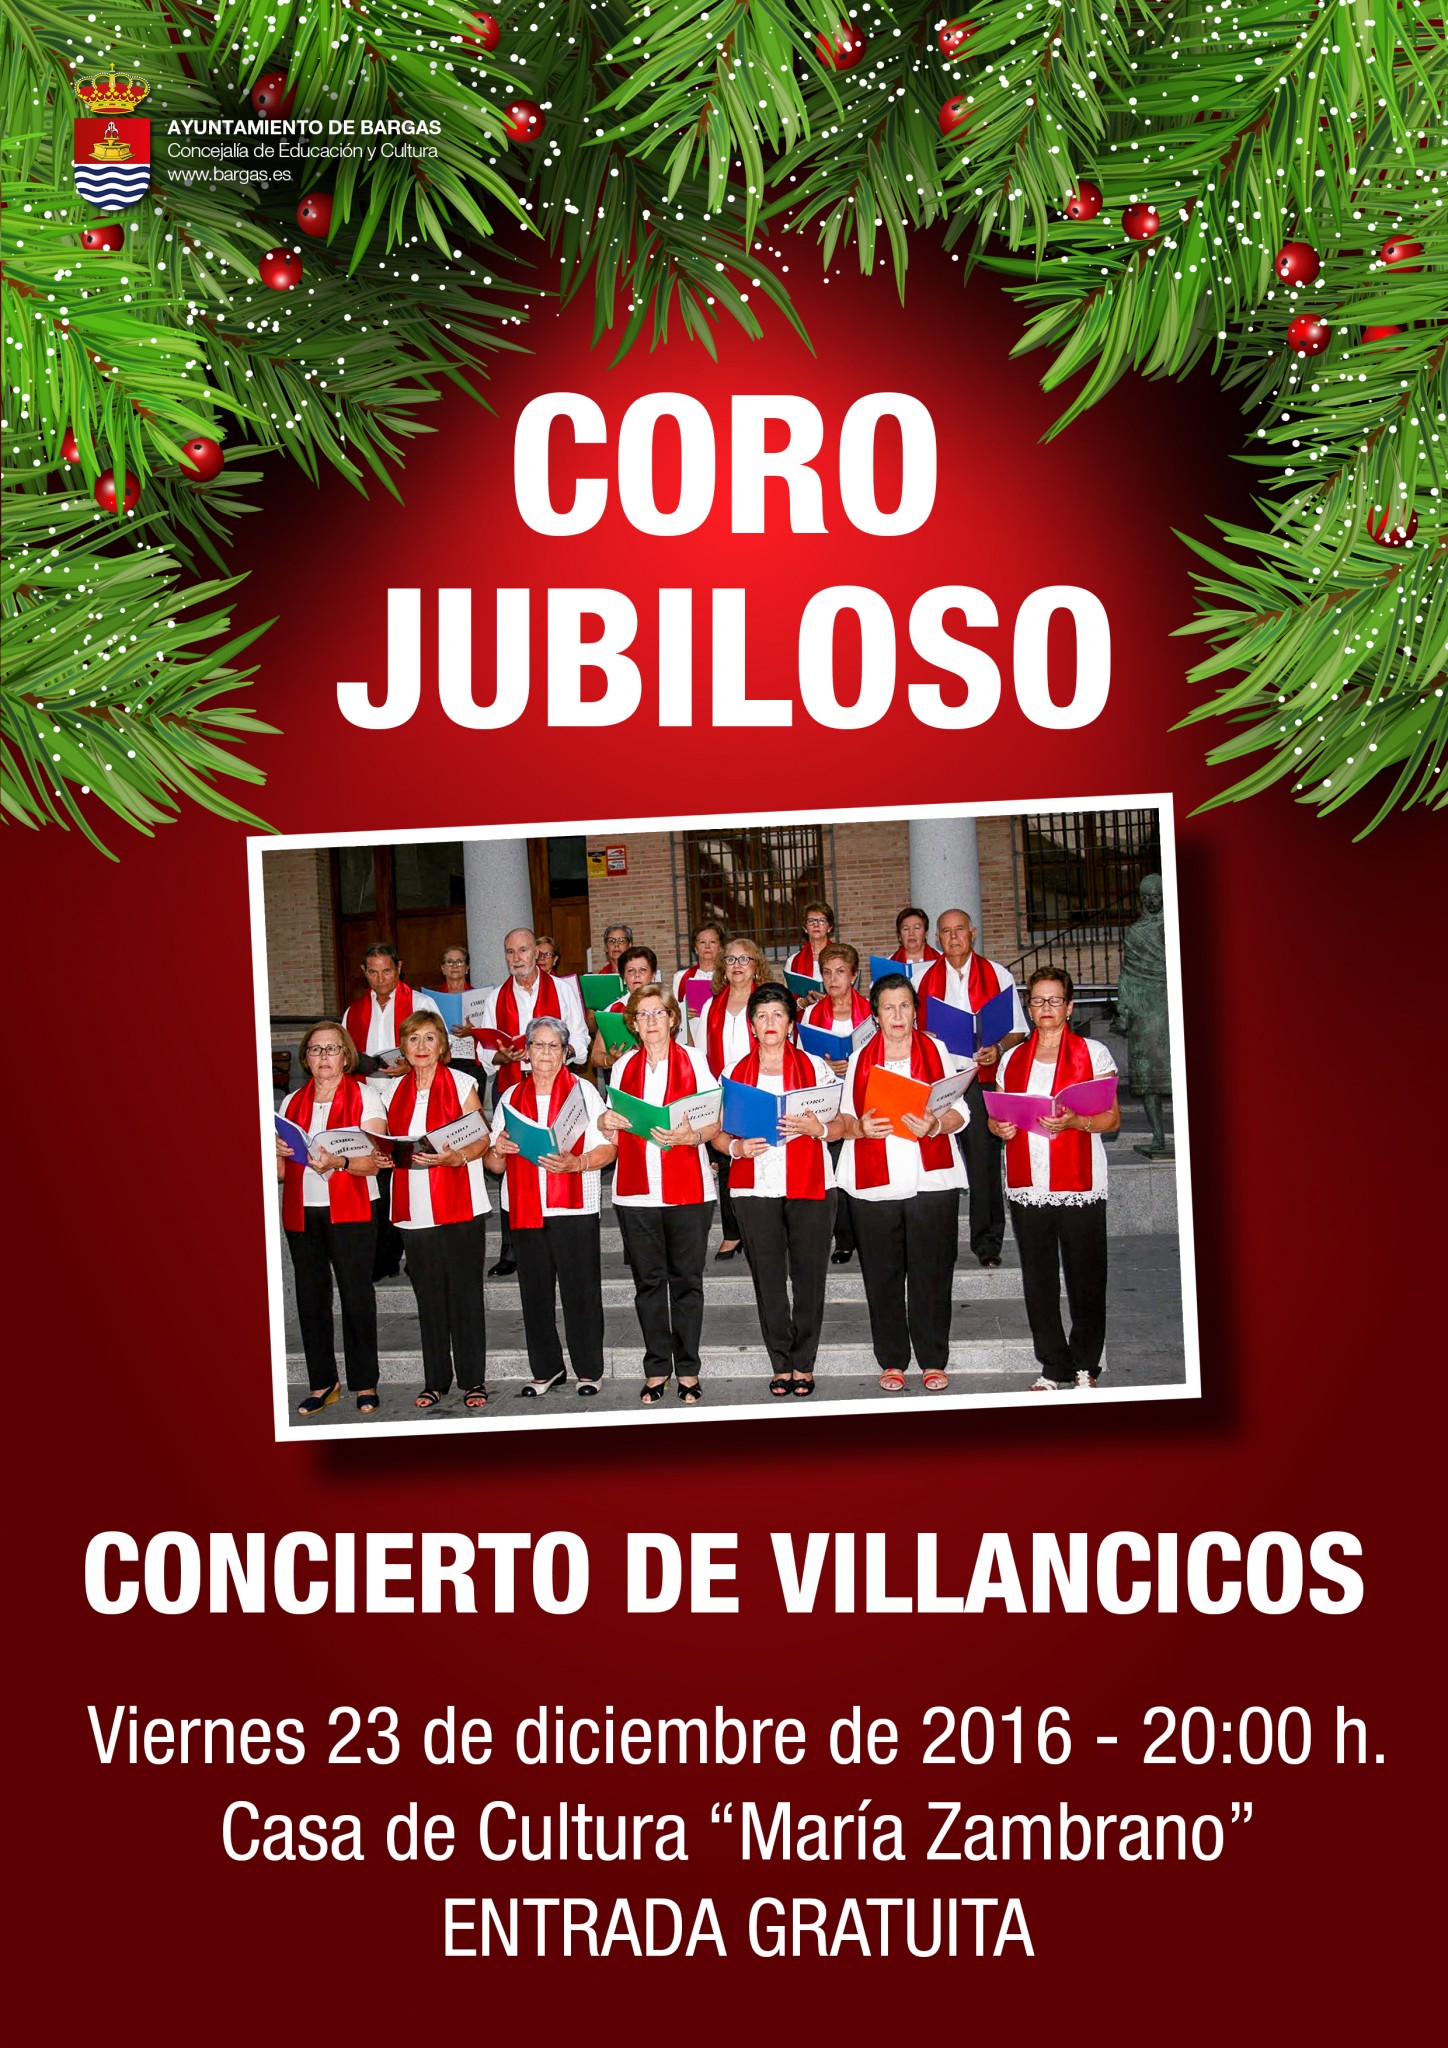 Concierto de Villancicos – Coro Jubiloso